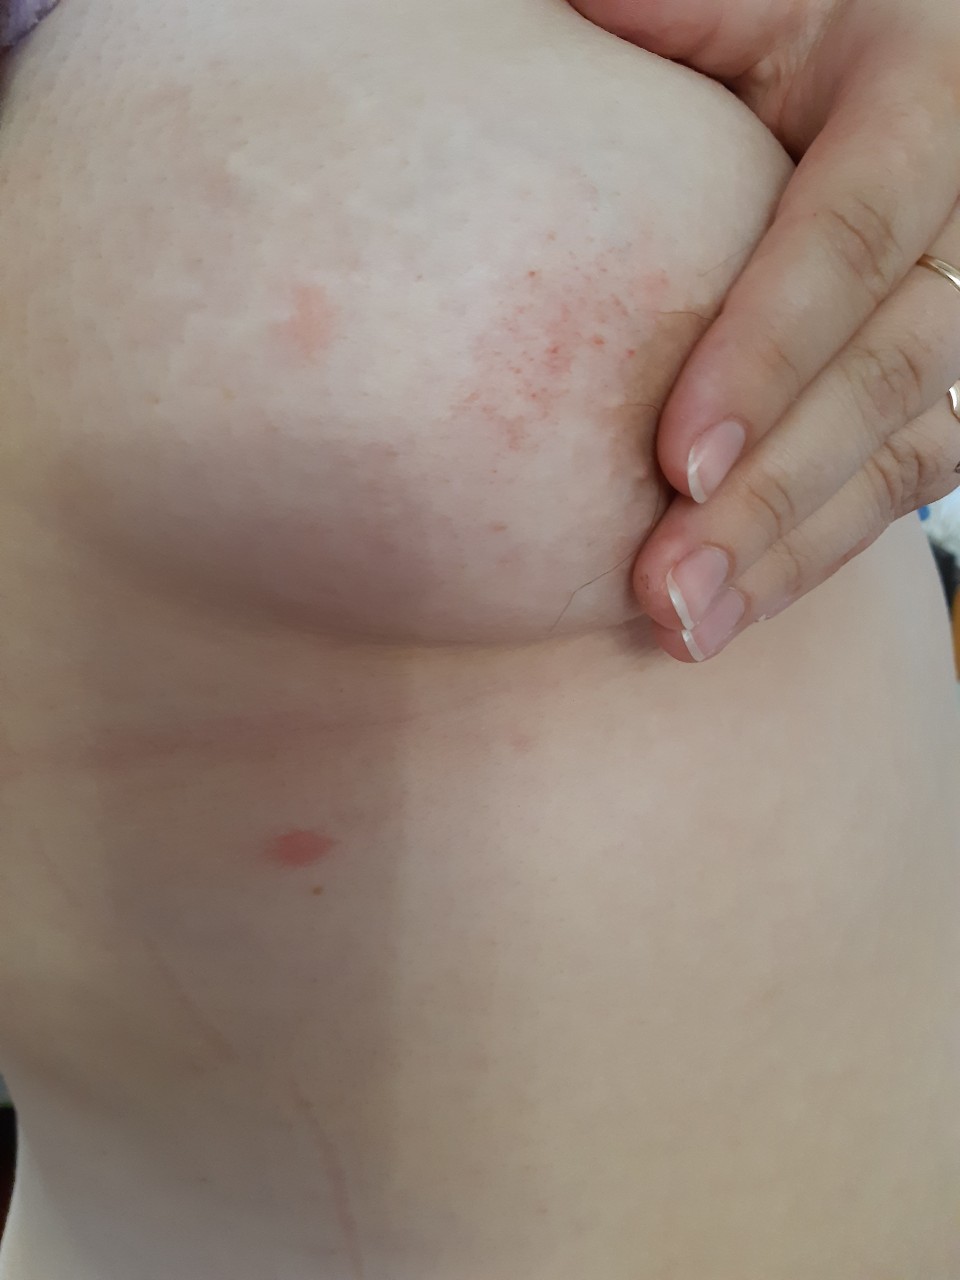 красные высыпания на груди у женщин фото 87